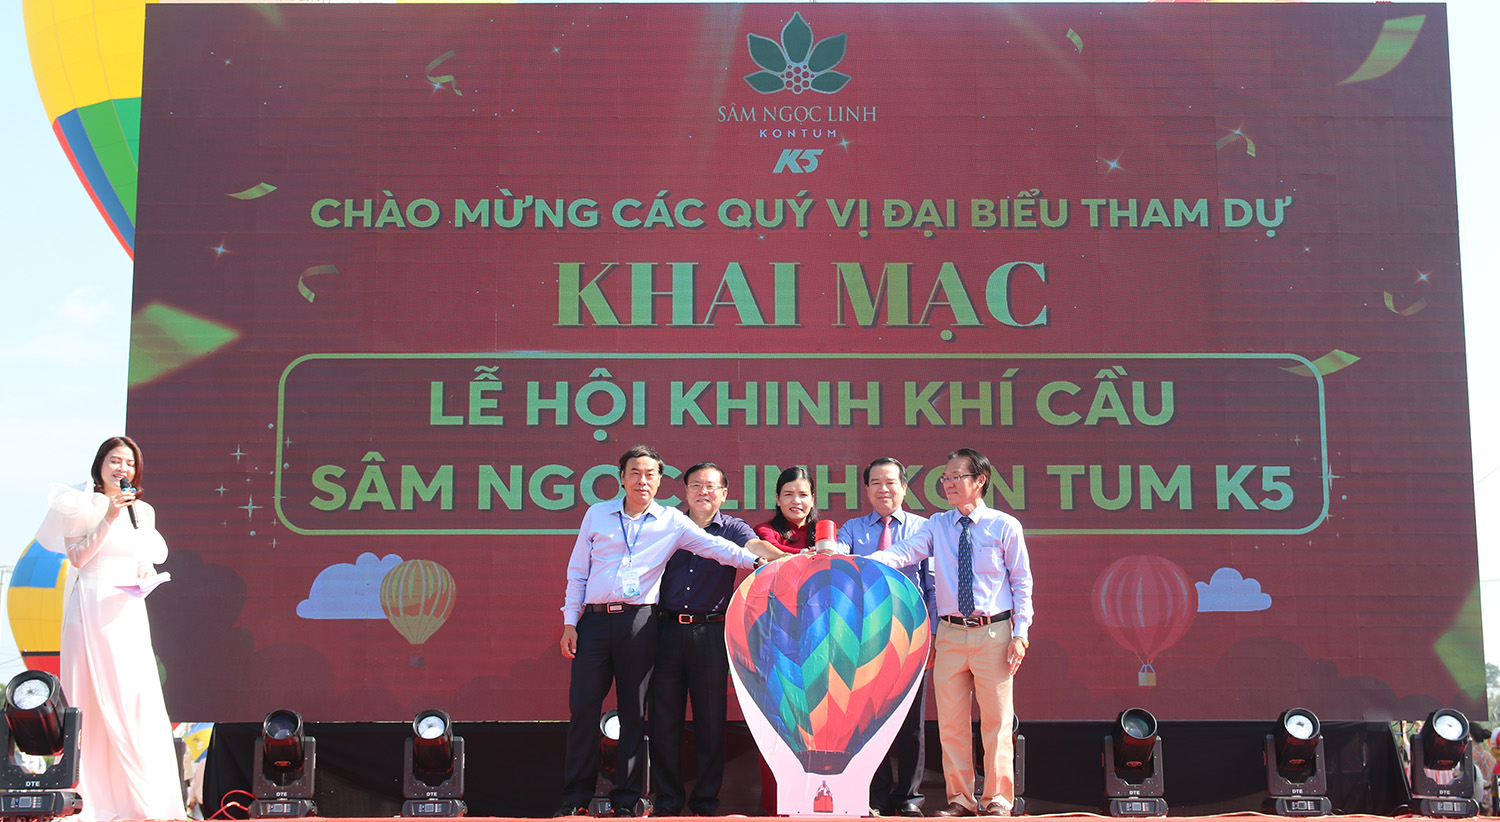 Khai mạc Lễ hội khinh khí cầu chào đón du khách đến Kon Tum và kích cầu du lịch năm 2022